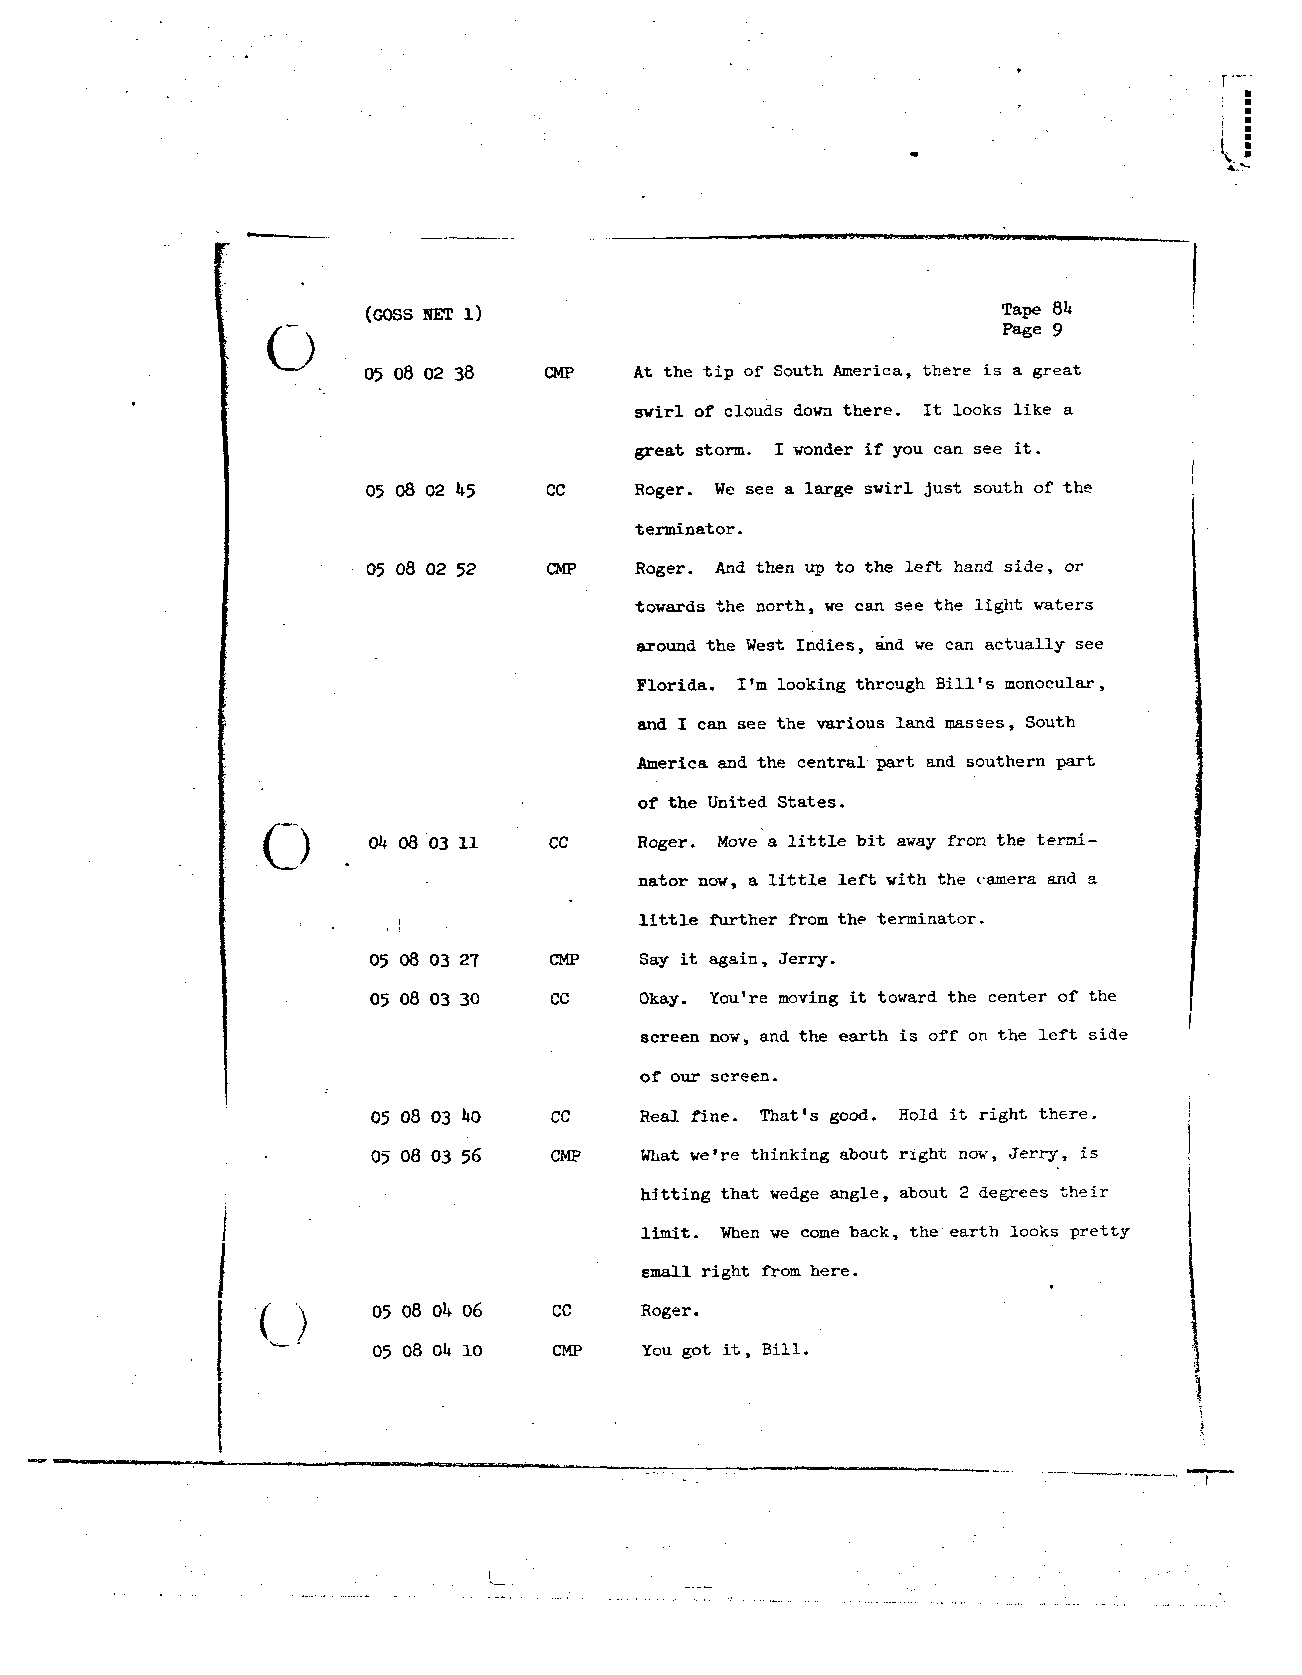 Page 695 of Apollo 8’s original transcript